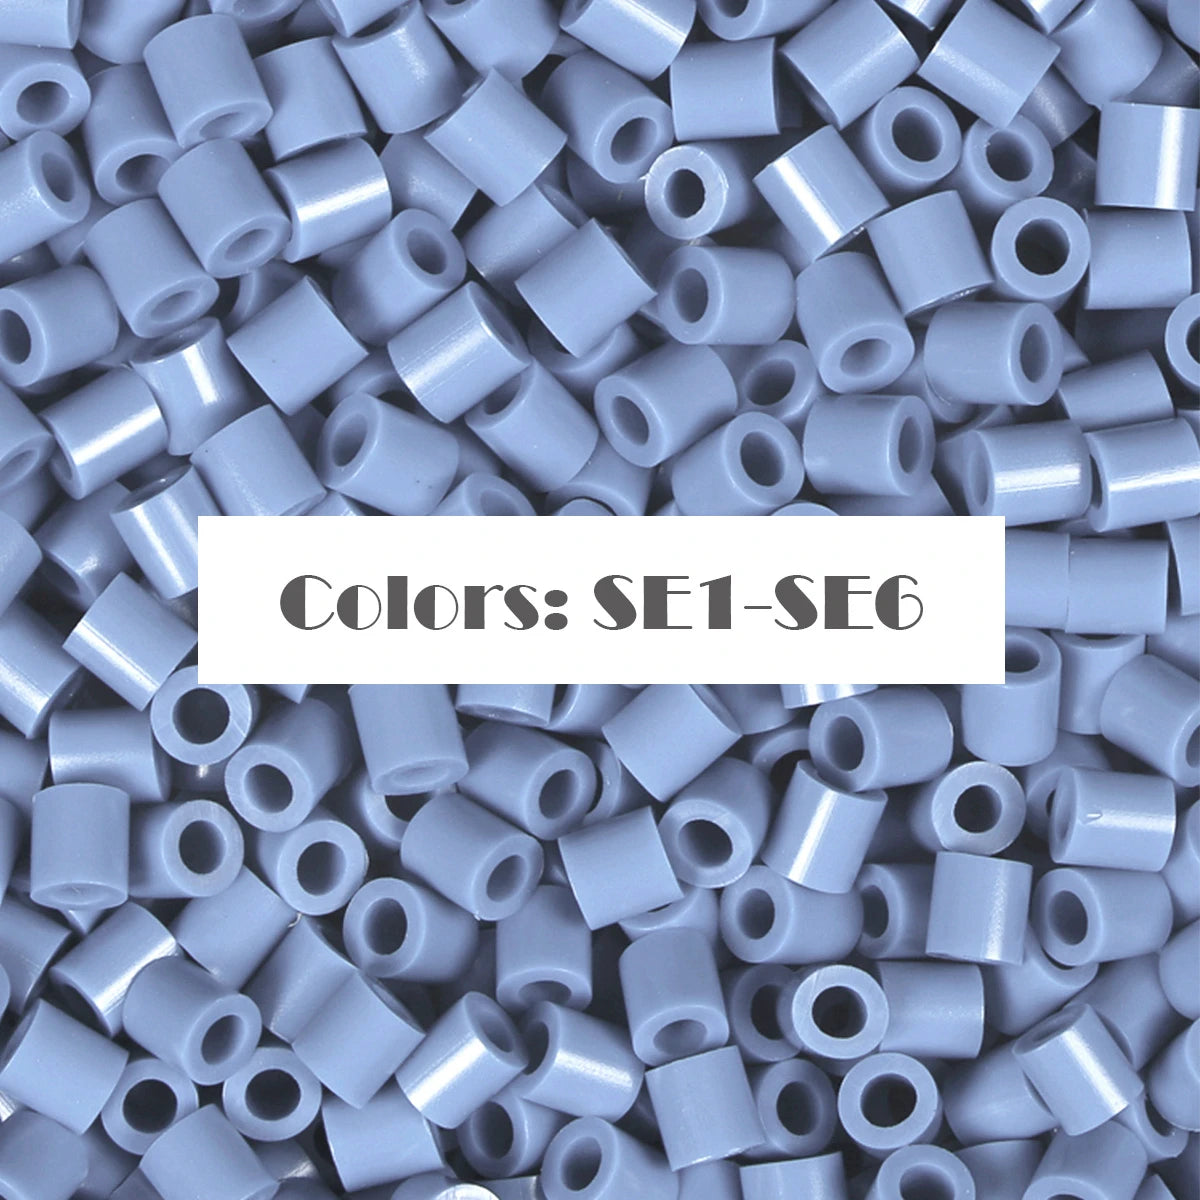 (SE1-SE6) Nova série colorida azul S-1KG a granel